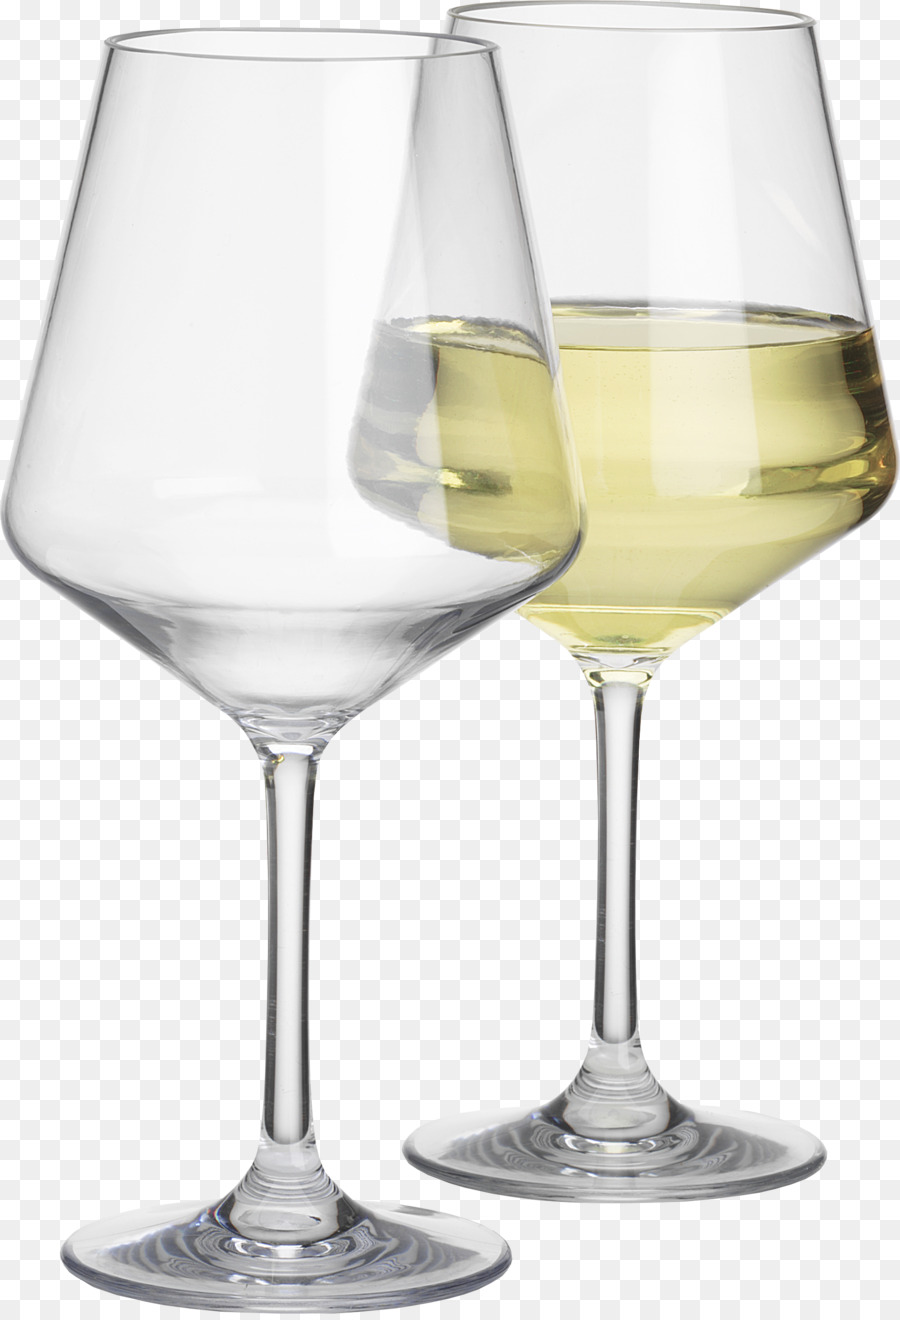 Wein-Glas-Melamin-Besteck-Tisch-Glas - Glas